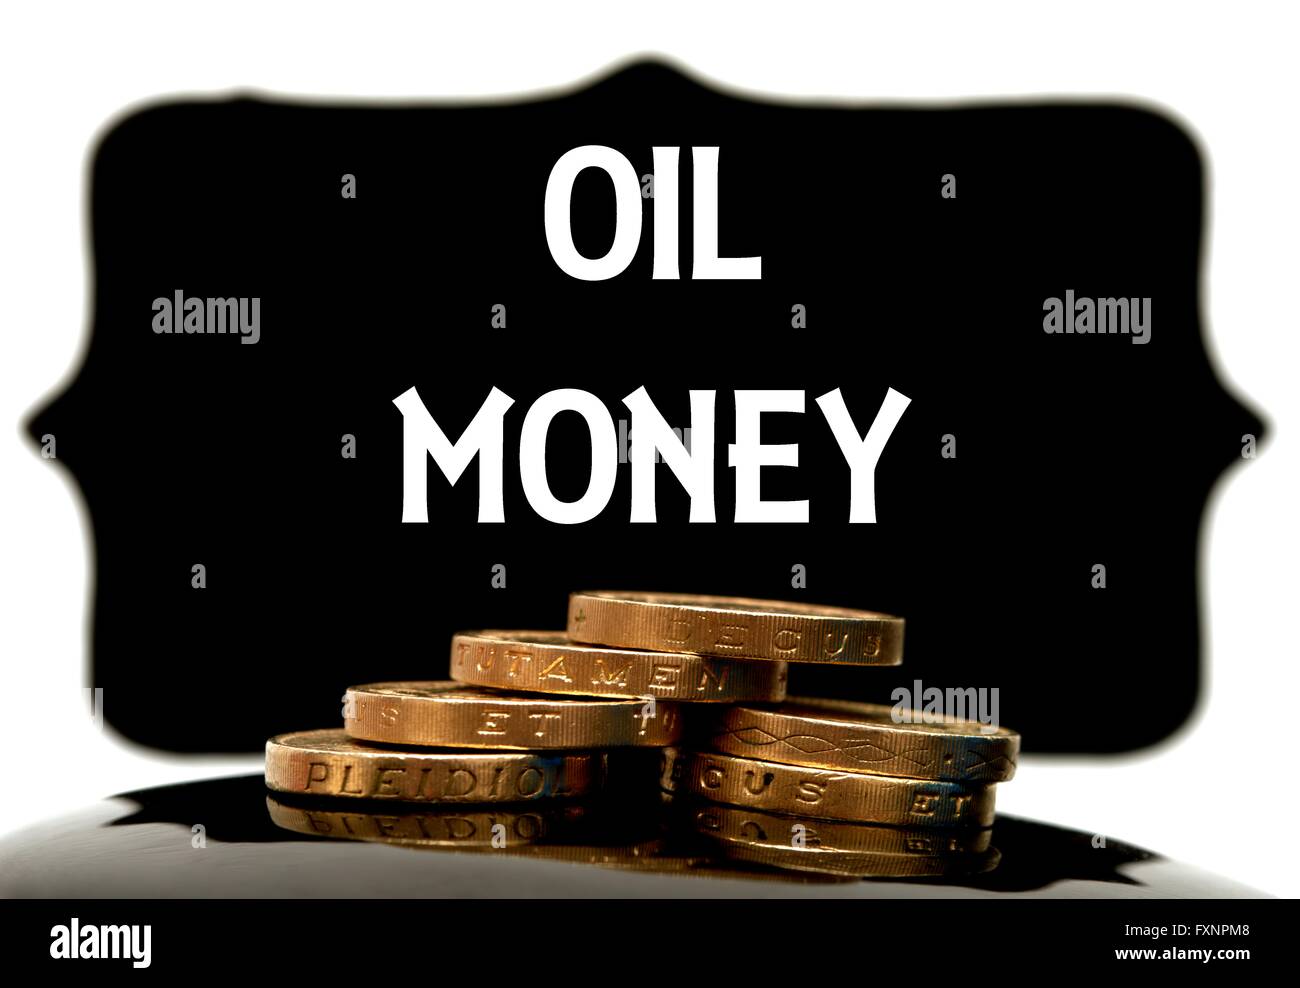 oil-money-concept-stock-photo-alamy